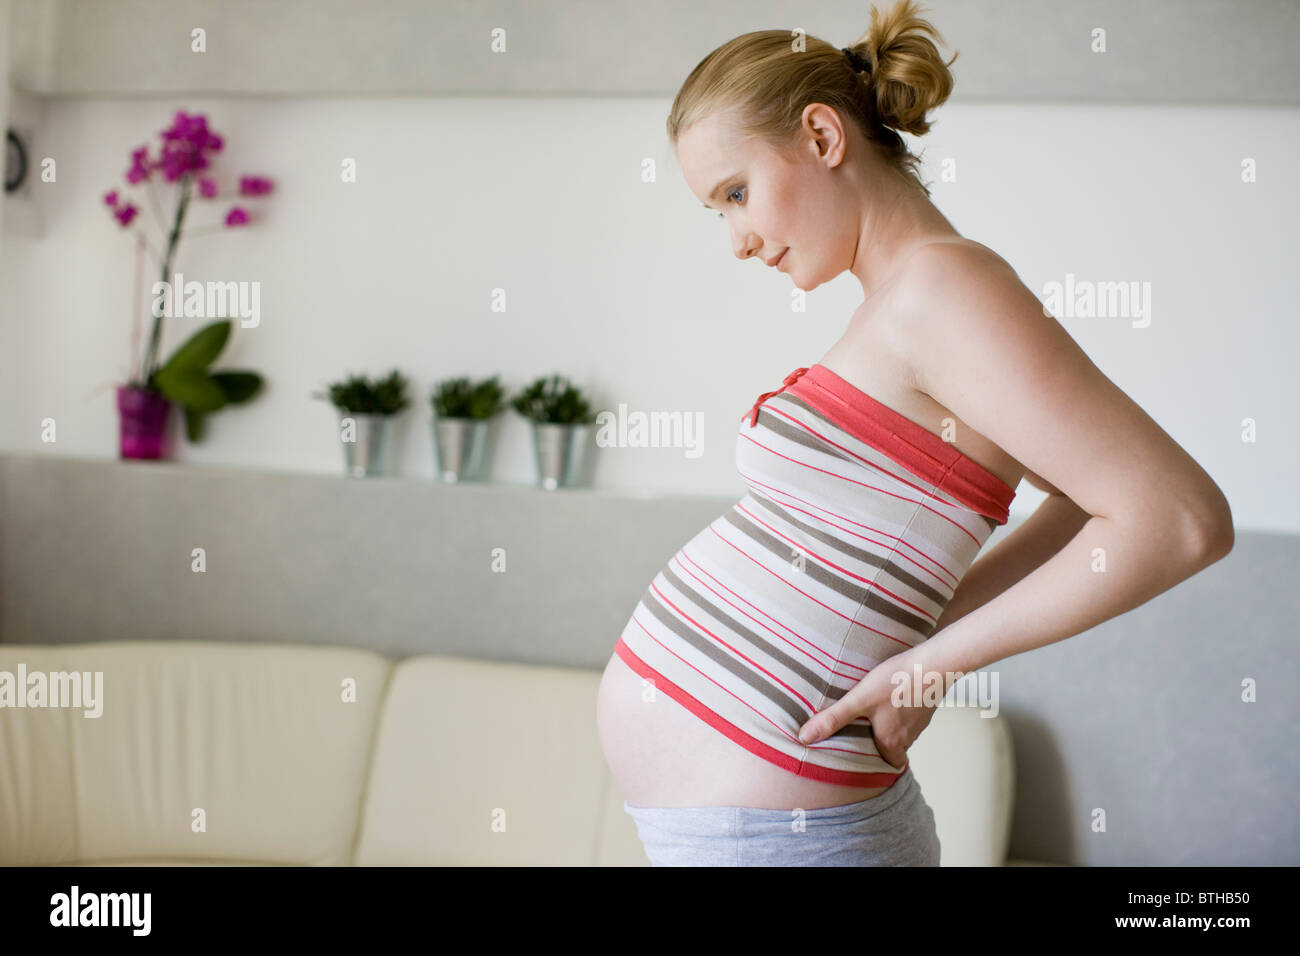 Поясница после родов. Молодая мамочка болит спина. Осанка во время беременности. Фото беременной девушки и боль в пояснице. Первые месячные после беременности болит спина.